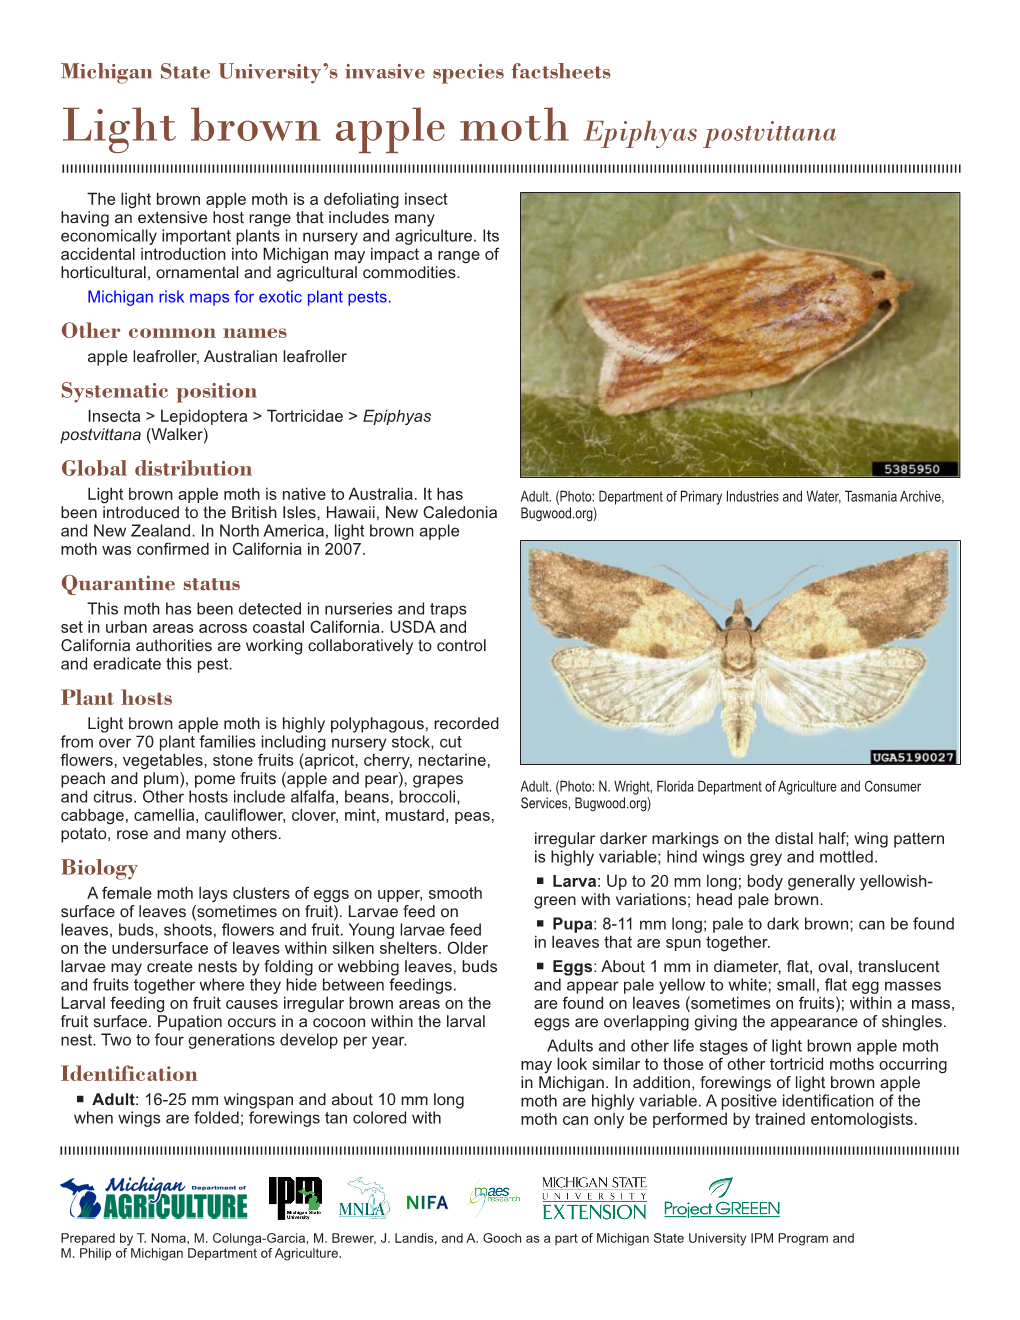 Light Brown Apple Moth Epiphyas Postvittana